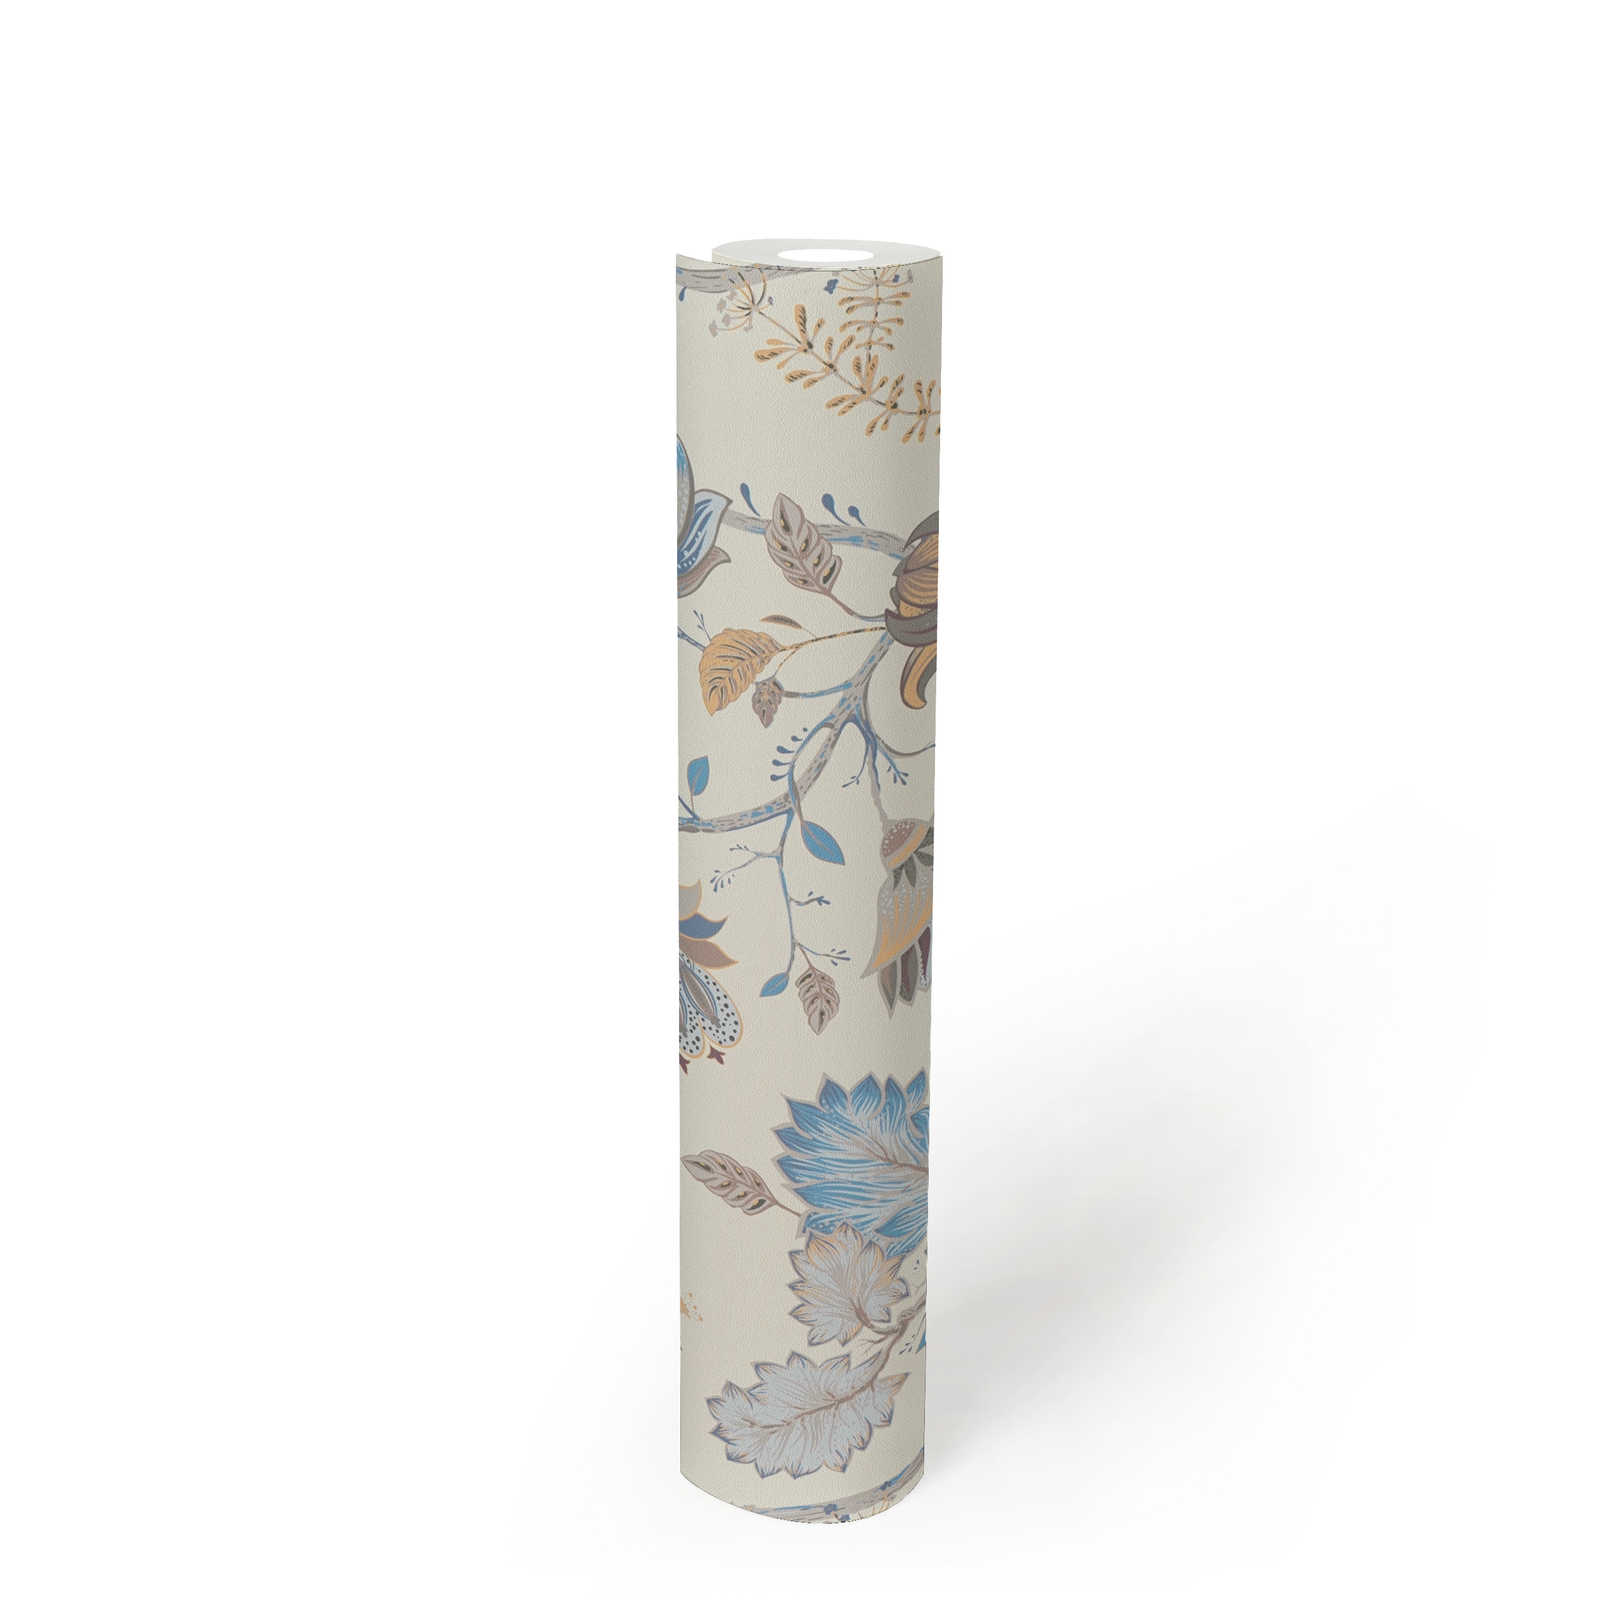             Papel pintado no tejido con motivos florales - azul, crema, gris
        